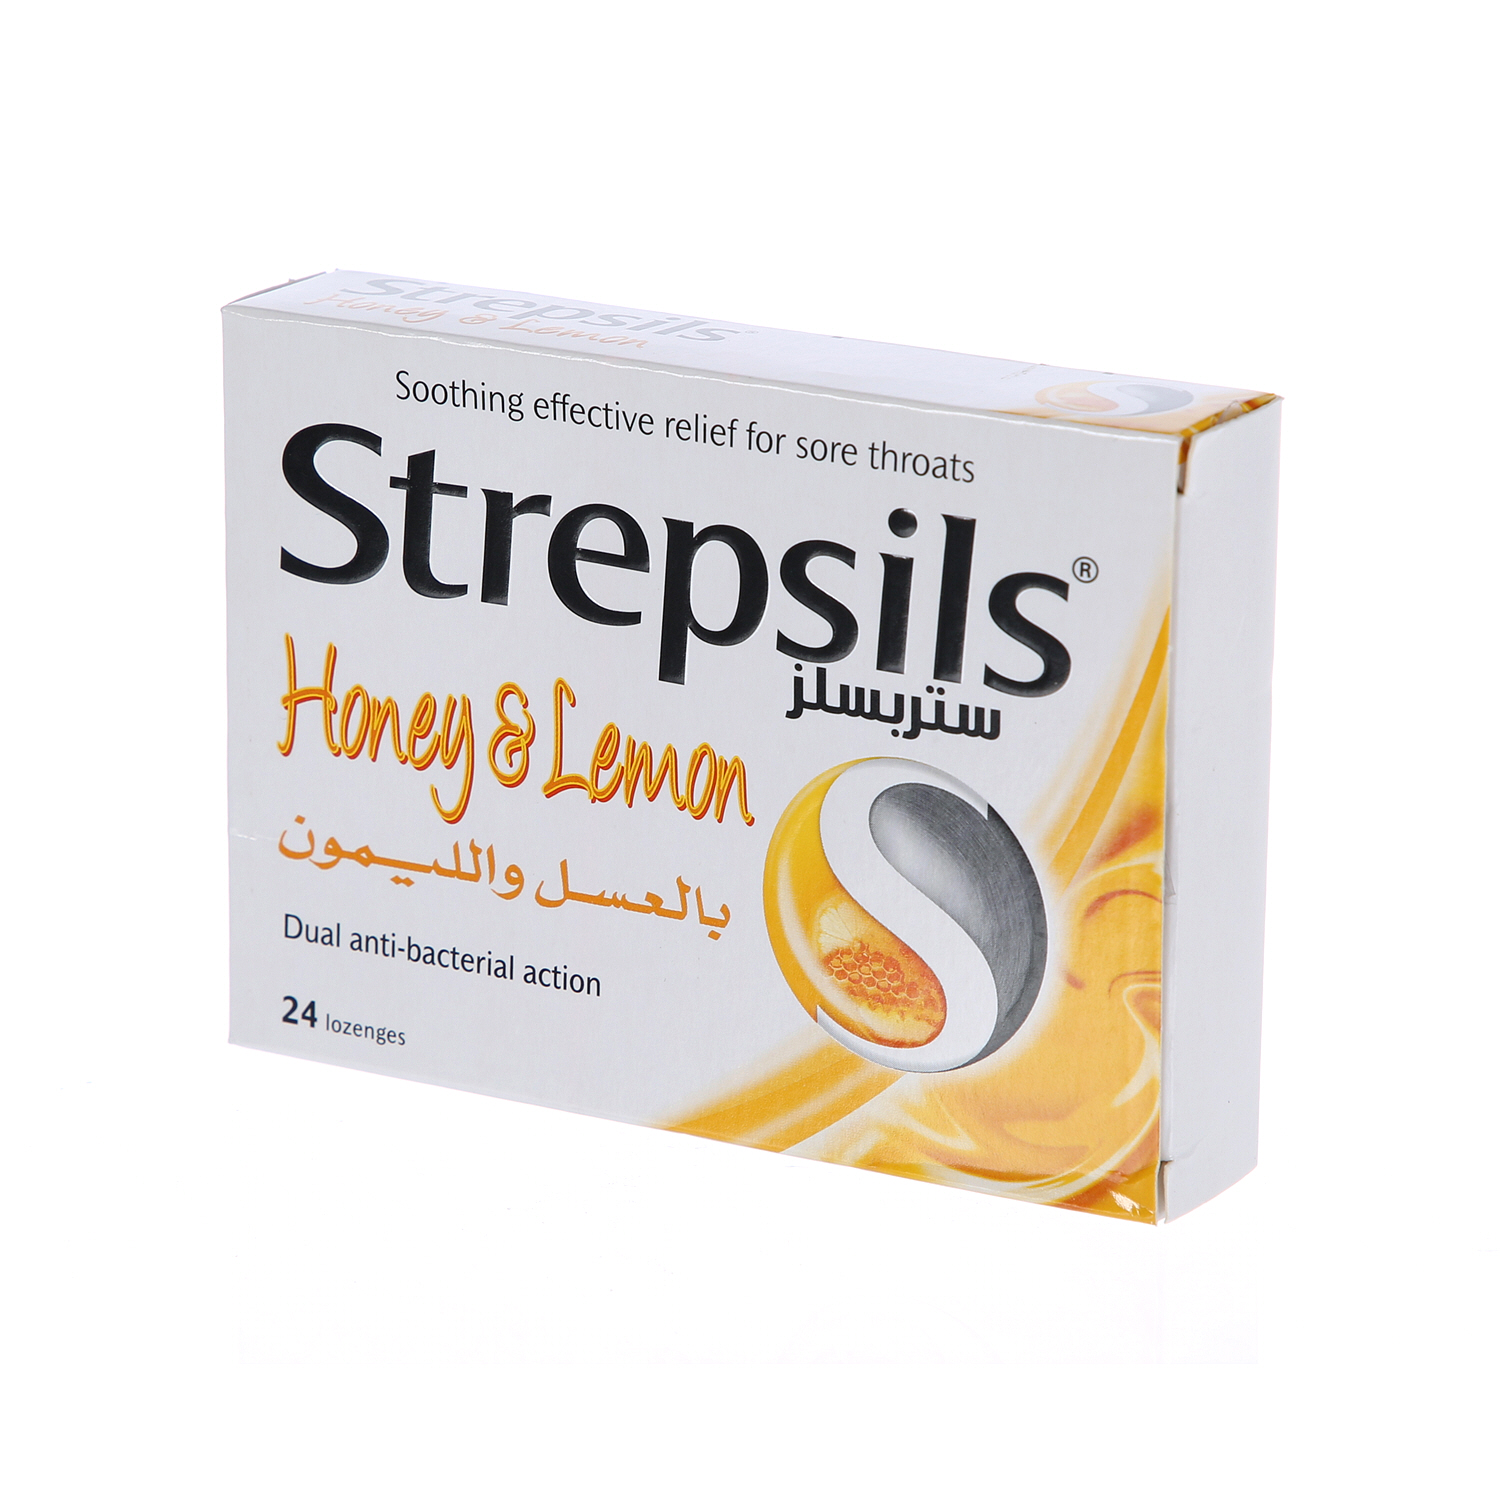 Strepsils Handy Pack Honey Lemon 10'S